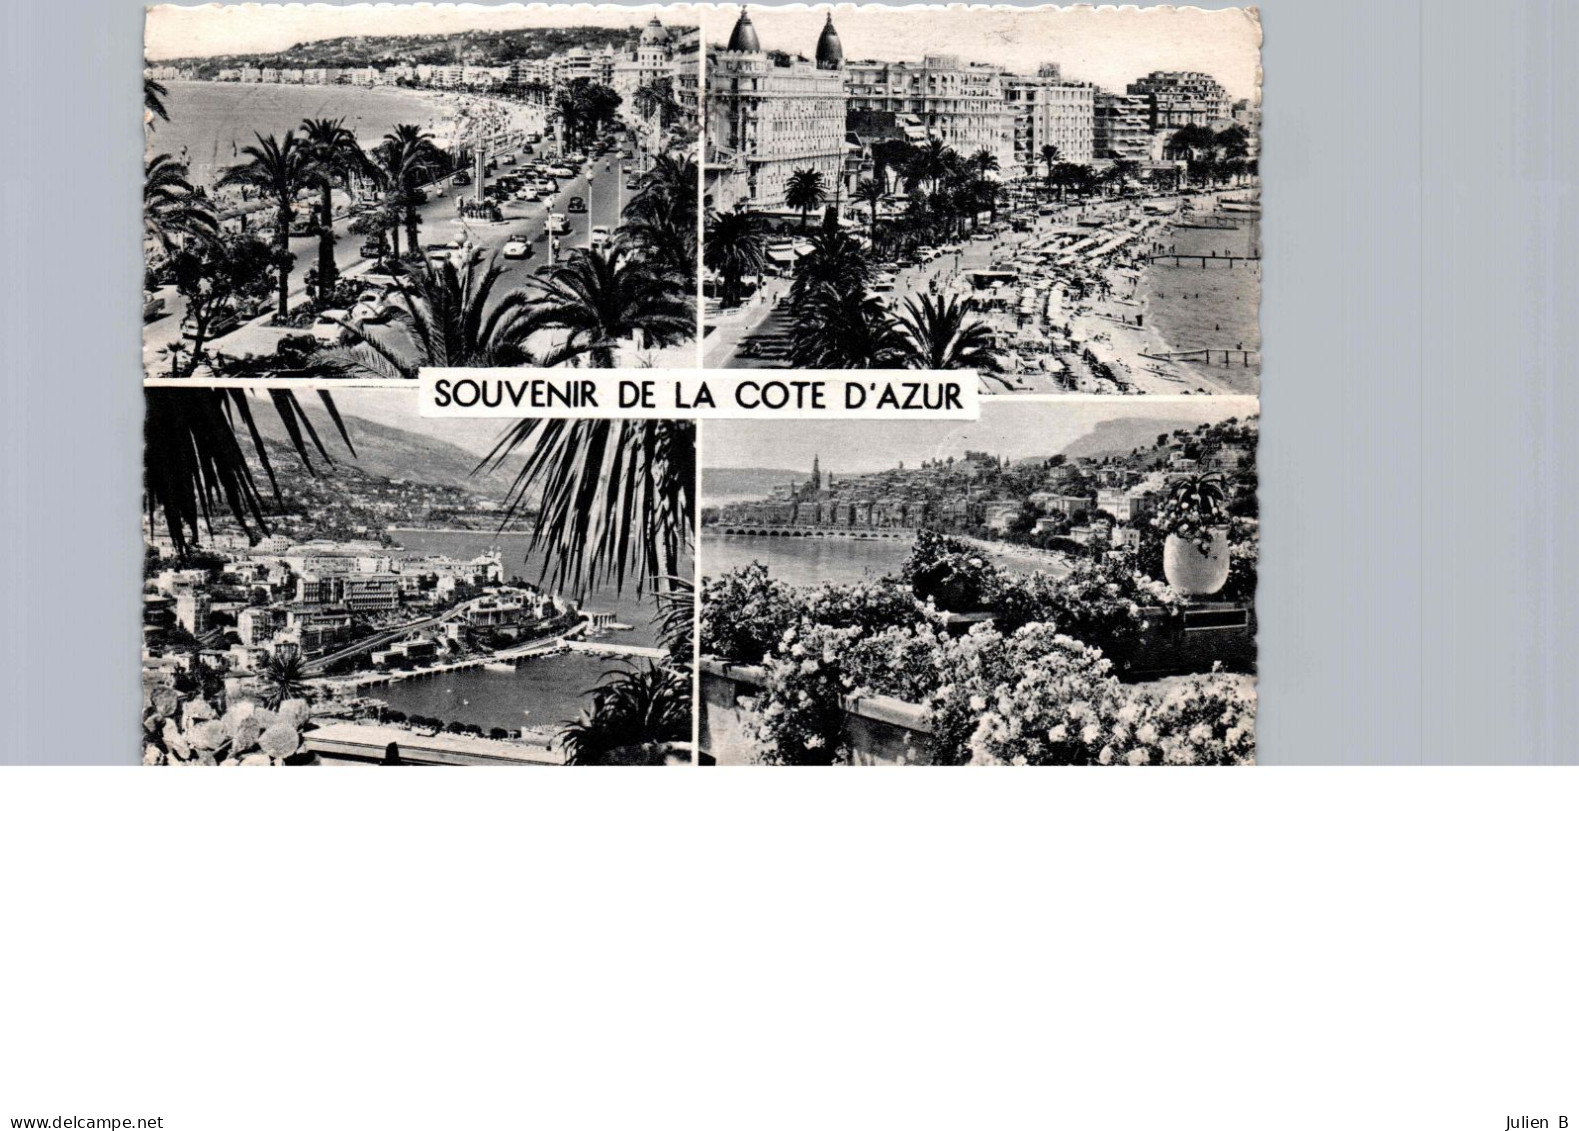 Souvenir De La Cote D'azur - Greetings From...